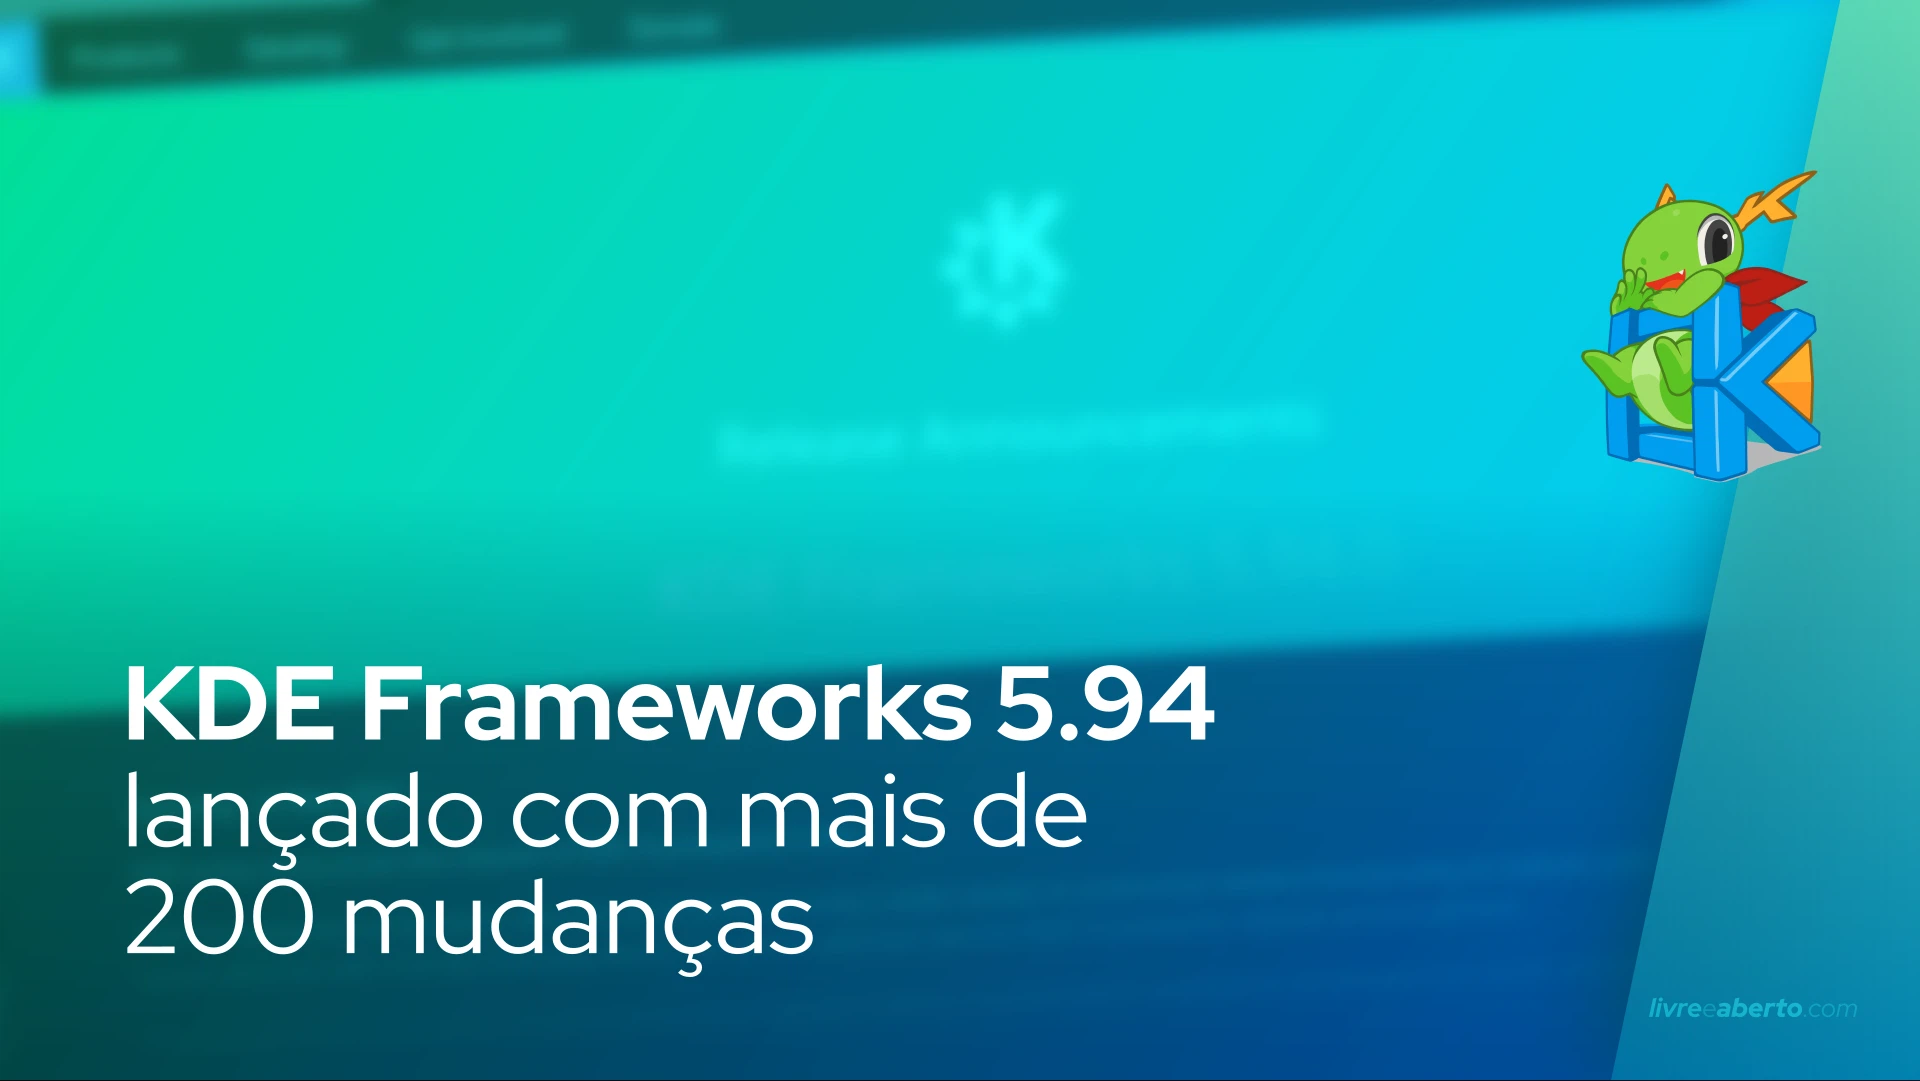 KDE Frameworks 5.94 lançado com mais de 200 mudanças, aqui está o que há de novo